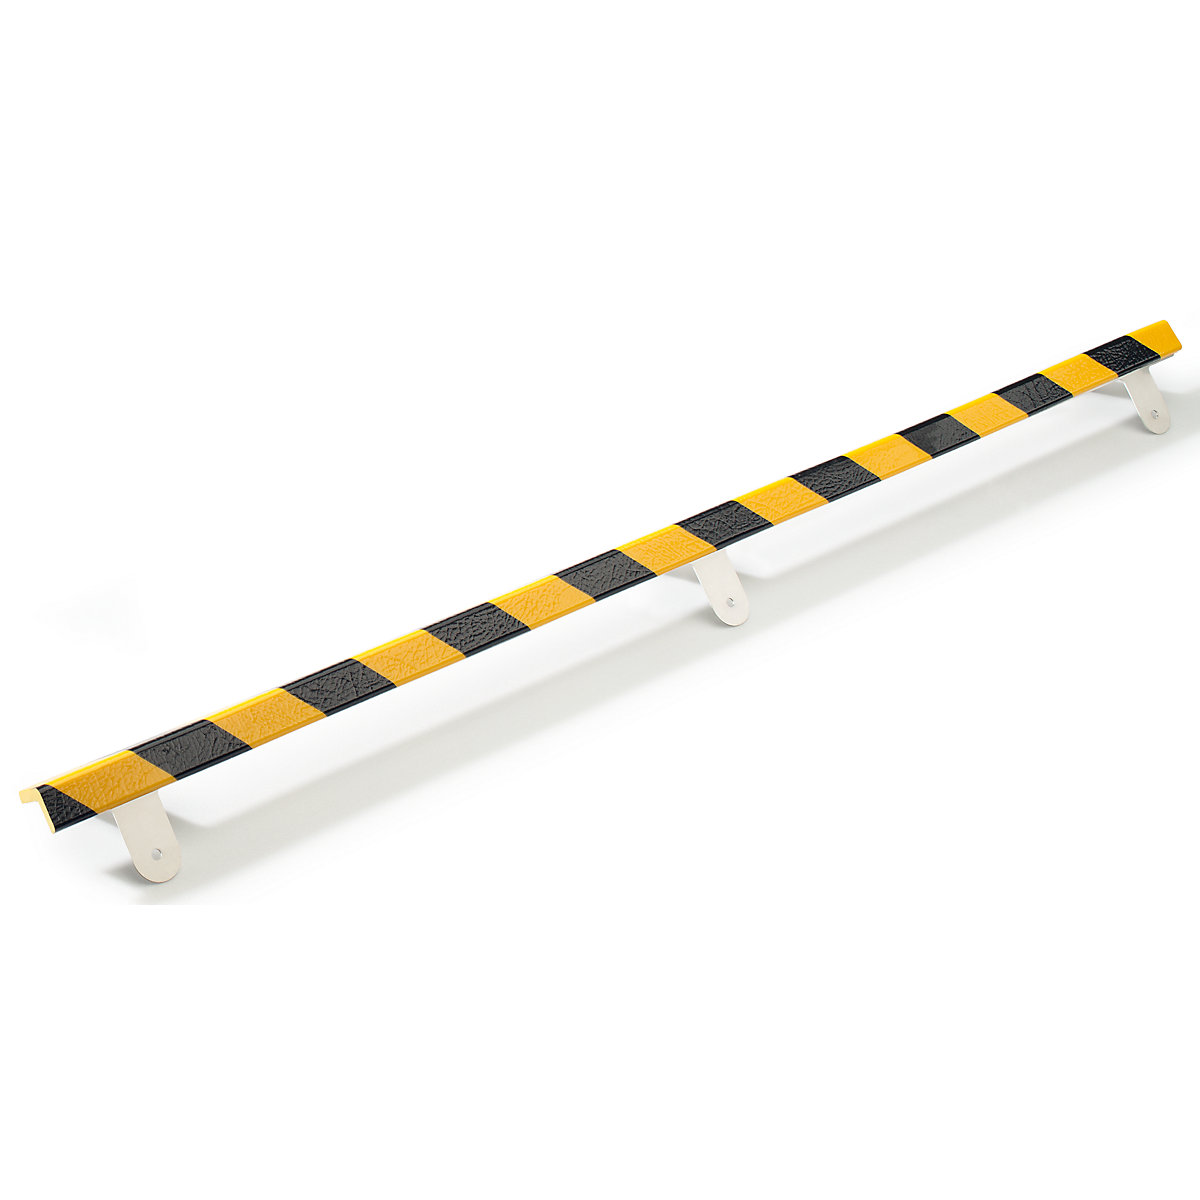 SHG – Protecție pentru colț Knuffi® cu șină de montaj, tip E, bucată de 1 m, negru / galben